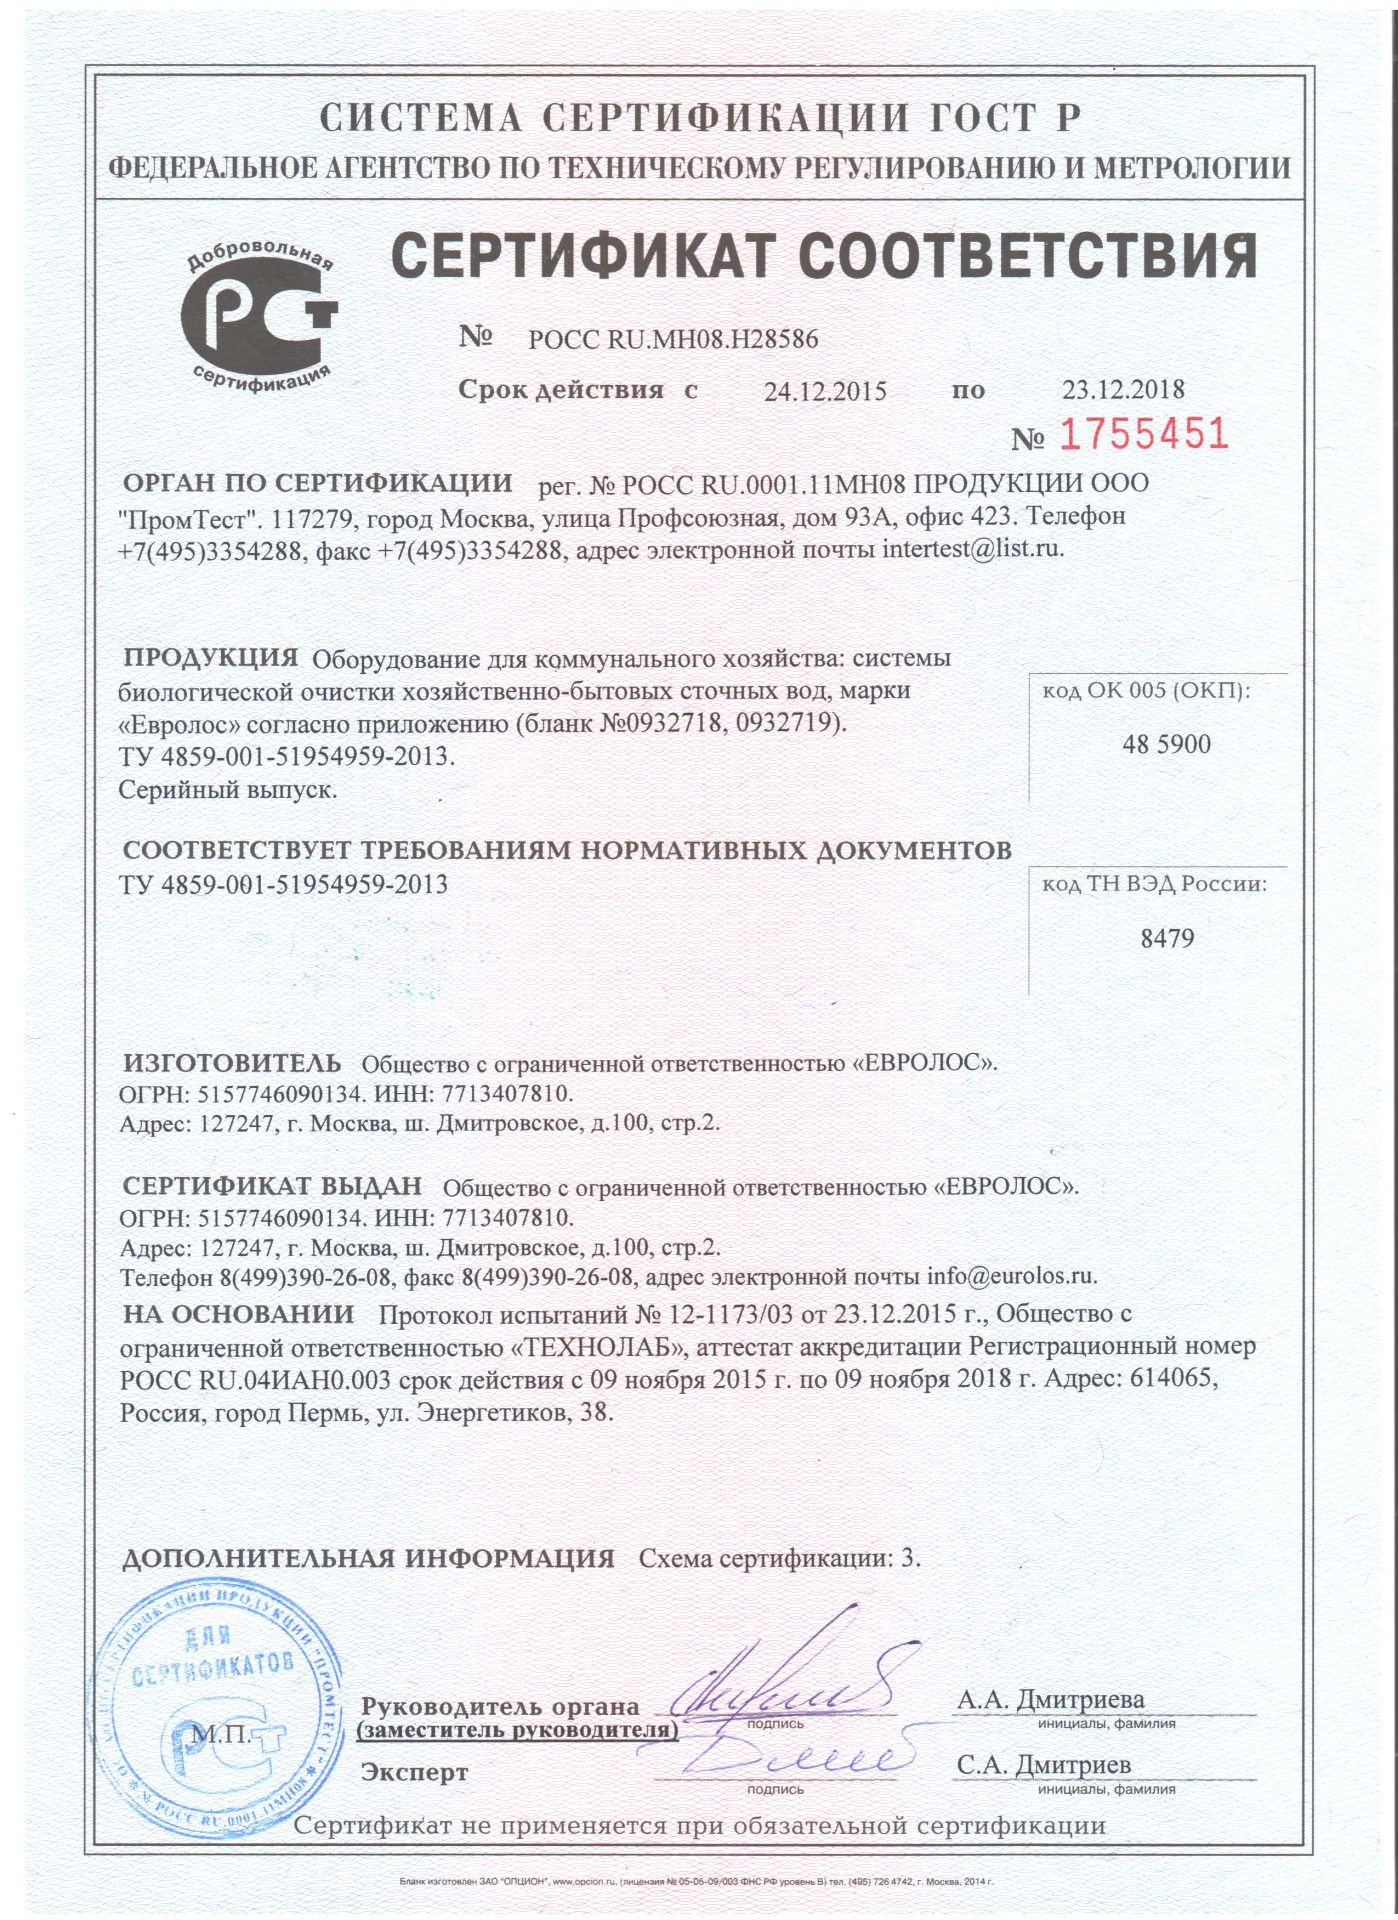 Сертификат Евролос